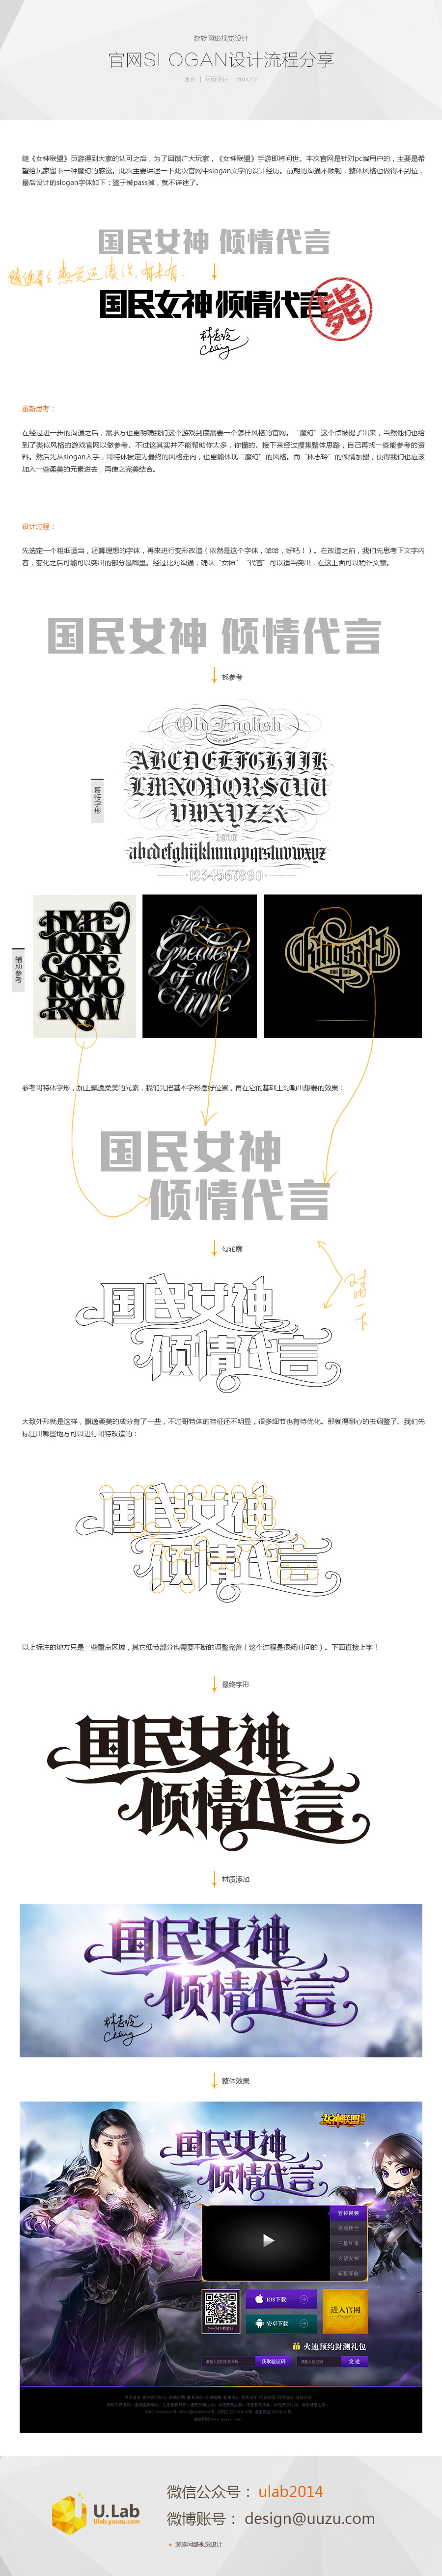 游戲官網slogan設計流程分享 三聯